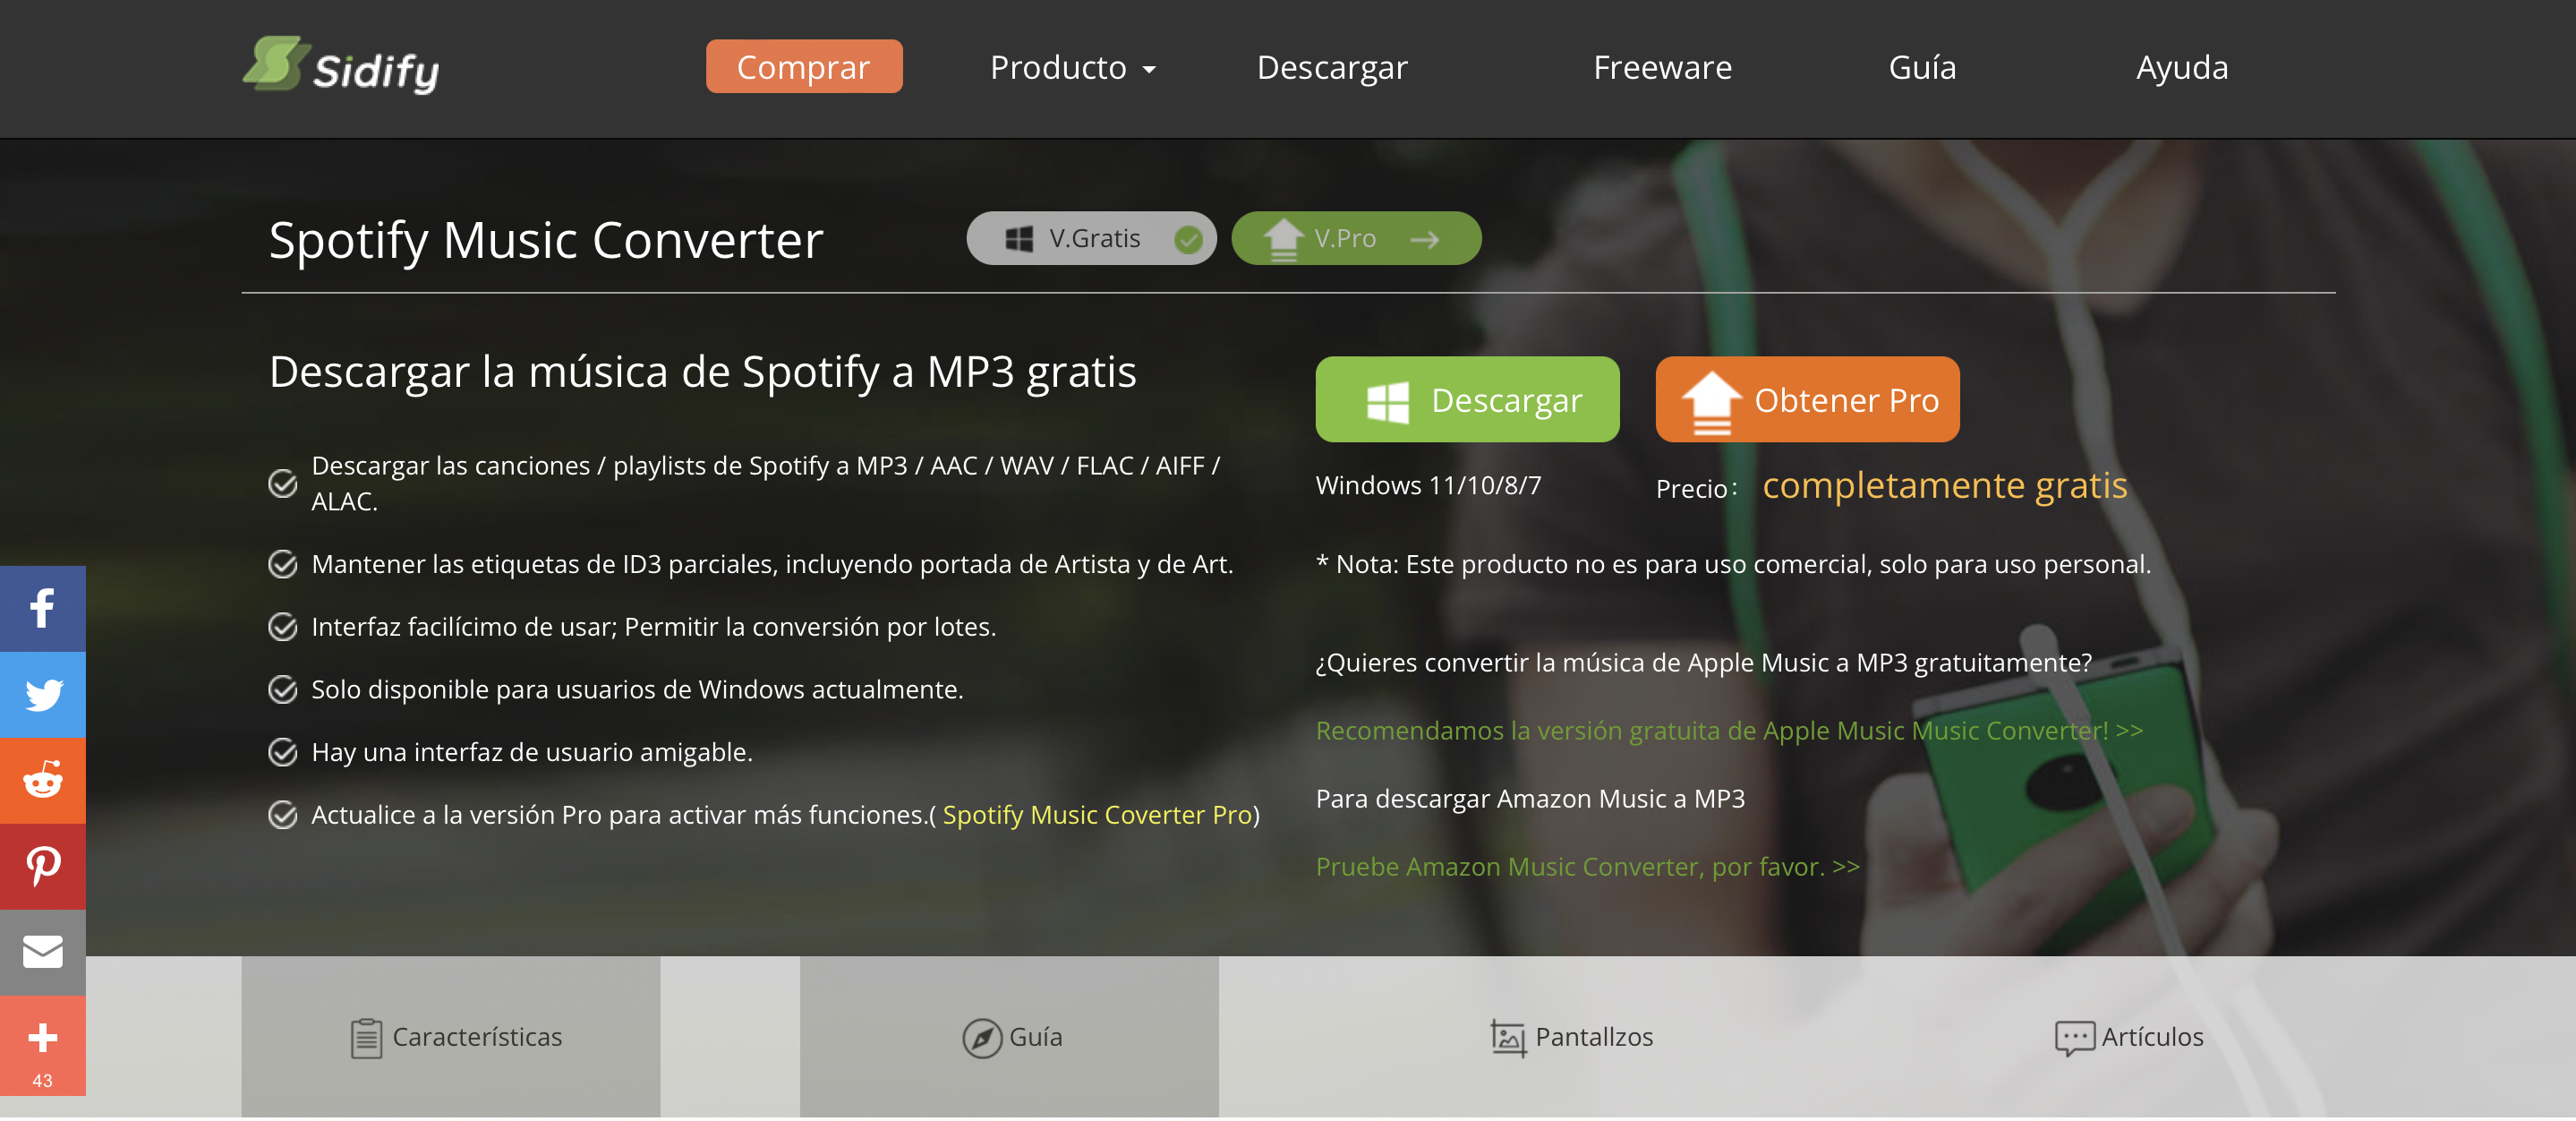 Fotoeléctrico Turismo de acuerdo a Cómo descargar canciones de Spotify en MP3 y escucharlas donde sea - Infobae